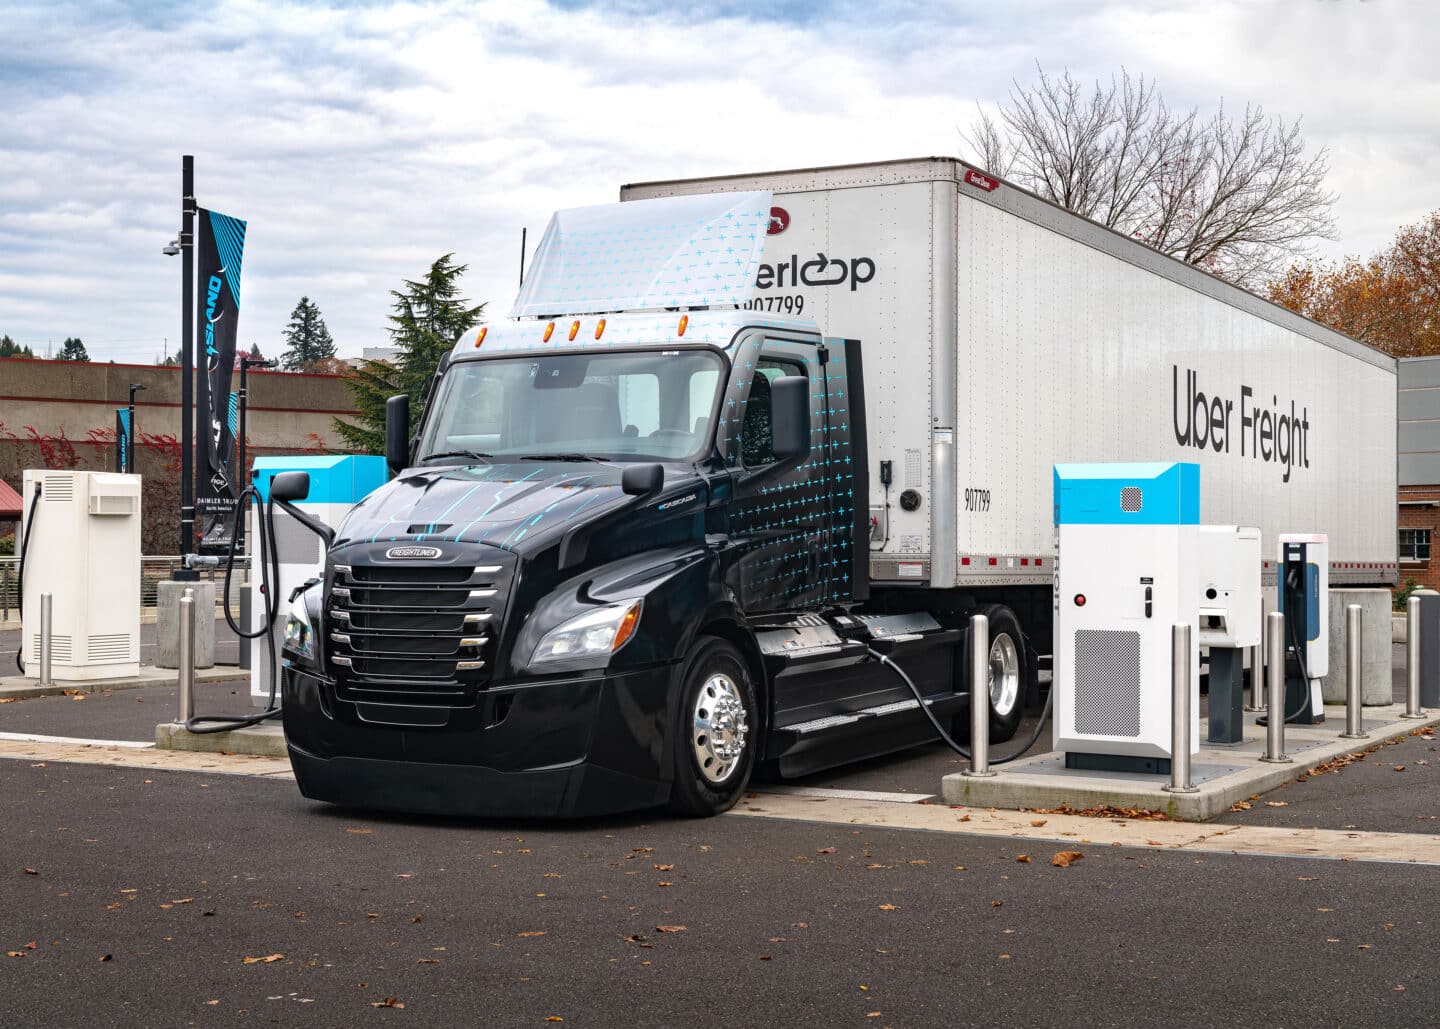 Le nouveau rapport d’Uber Freight présente une feuille de route pour le déploiement de camions électriques à l’échelle nationale